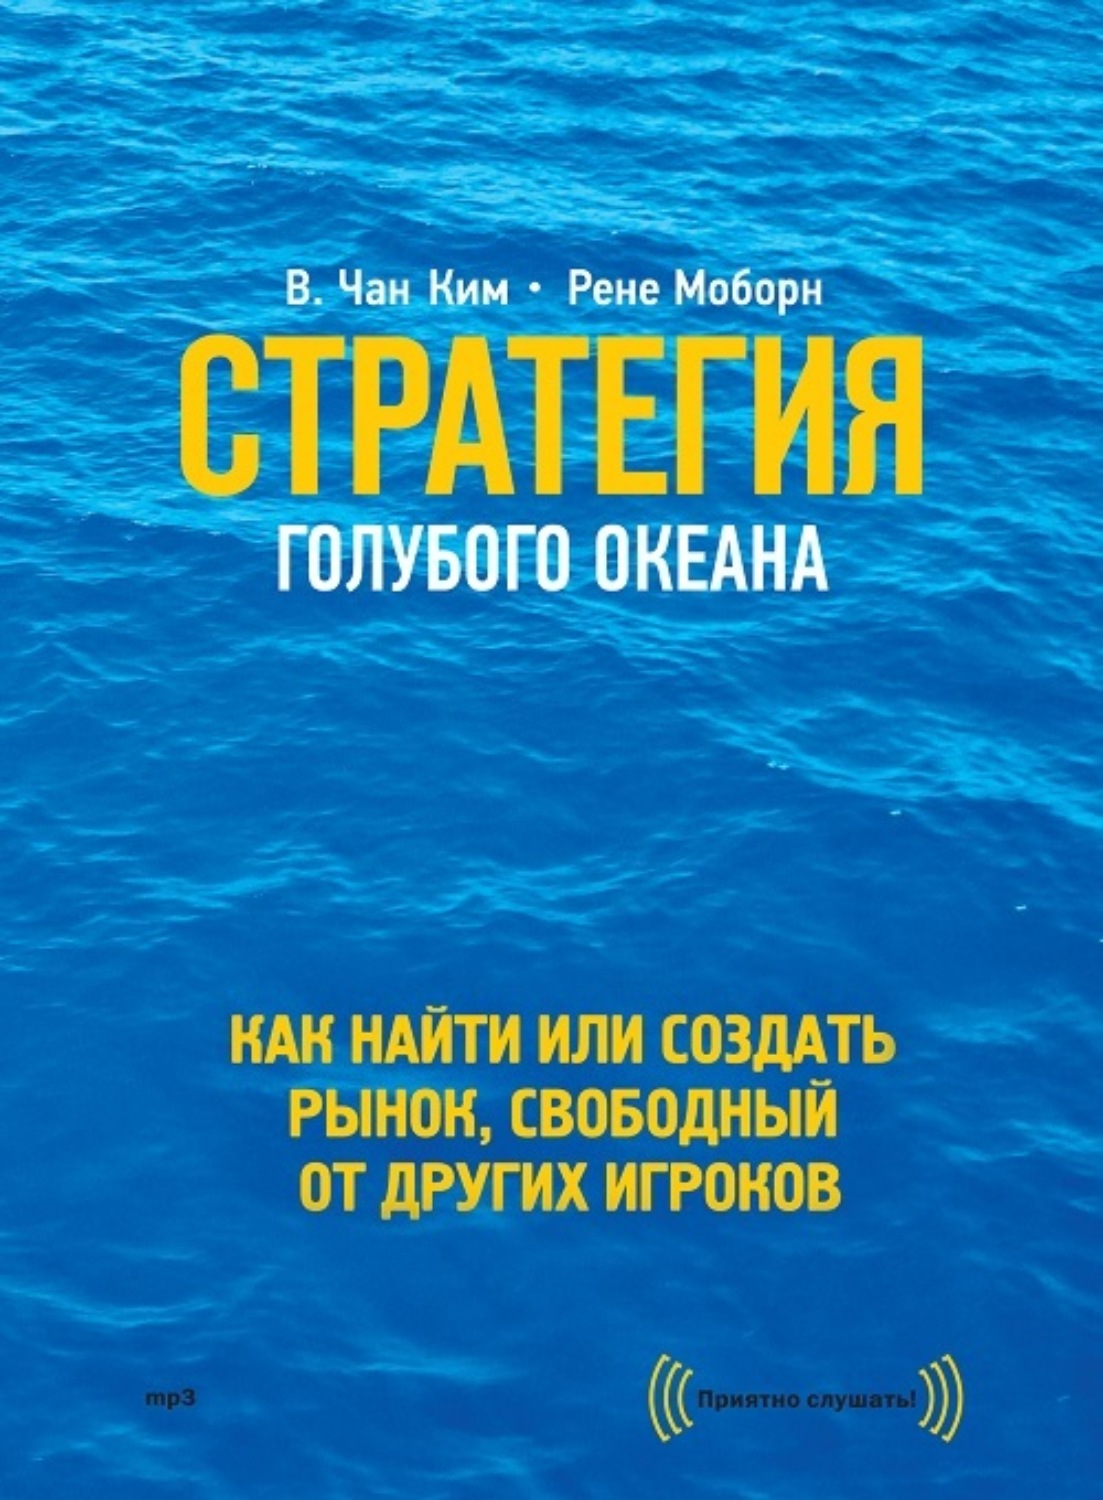 Цитаты из книги «Стратегия голубого океана. Как найти или создать рынок,  свободный от других игроков» Рене Моборн – Литрес